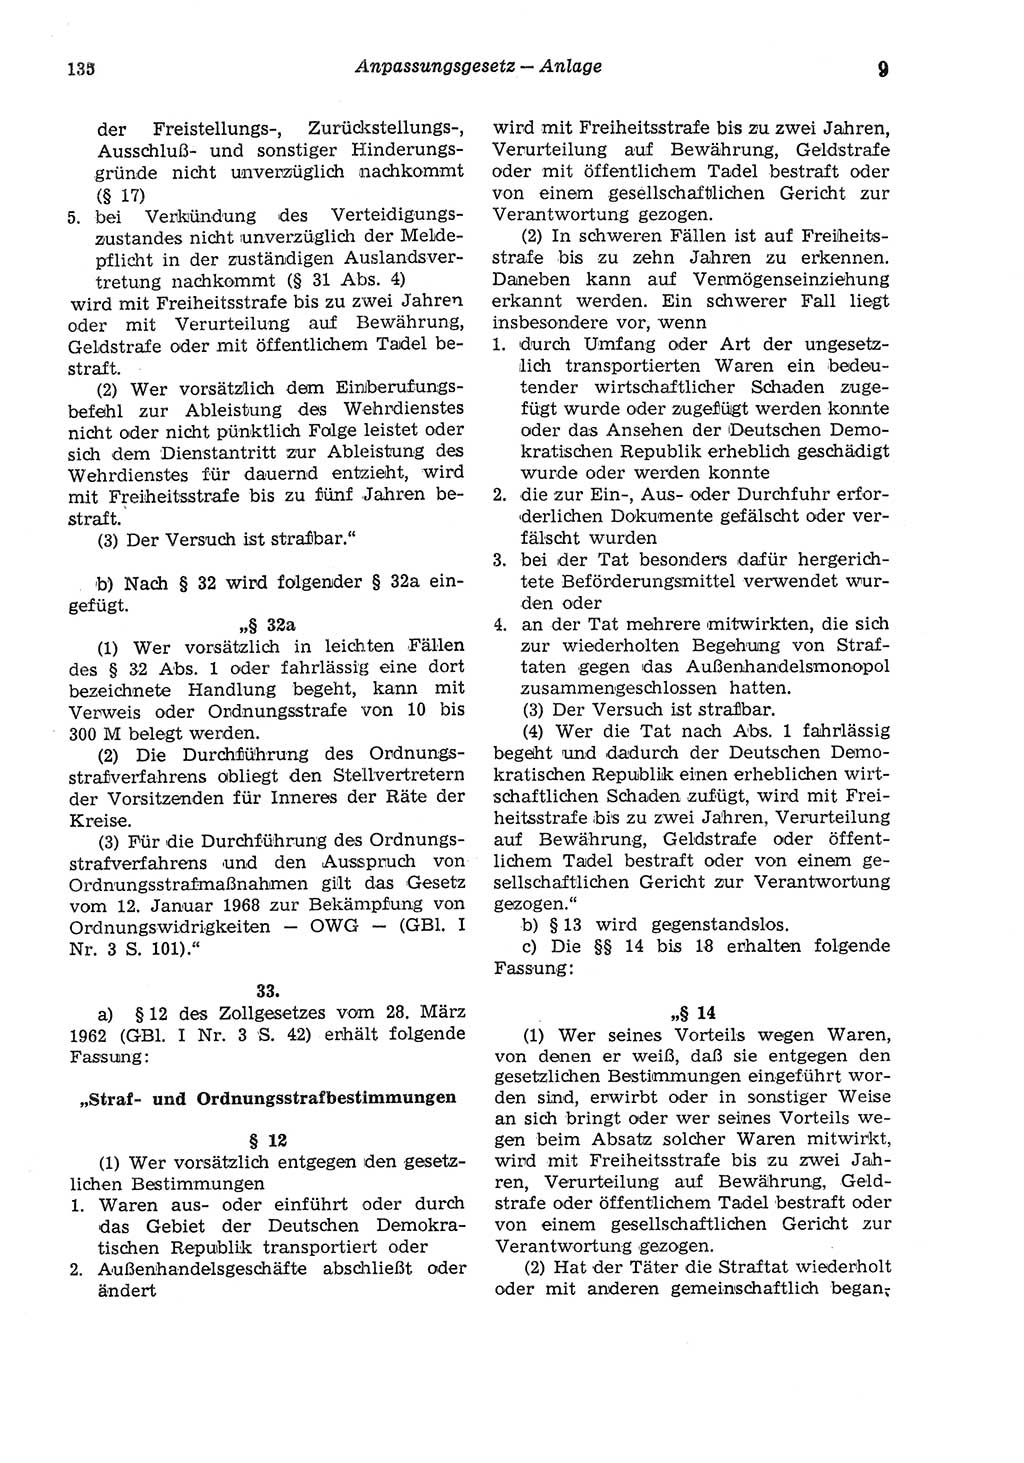 Strafgesetzbuch (StGB) der Deutschen Demokratischen Republik (DDR) und angrenzende Gesetze und Bestimmungen 1975, Seite 135 (StGB DDR Ges. Best. 1975, S. 135)